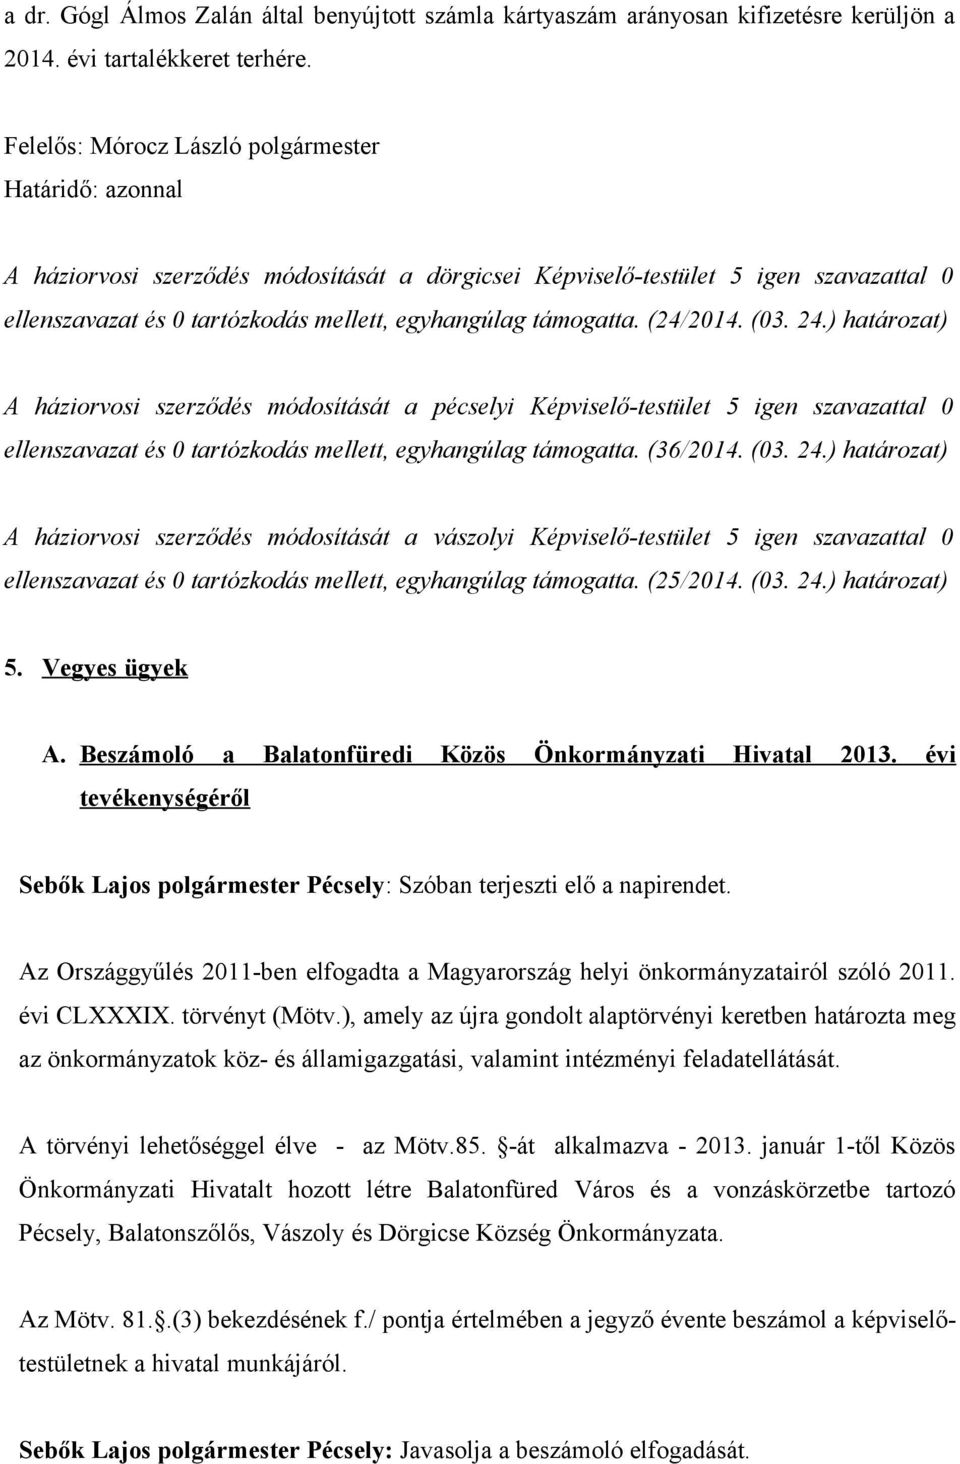 támogatta. (24/2014. (03. 24.) határozat) A háziorvosi szerződés módosítását a pécselyi Képviselő-testület 5 igen szavazattal 0 ellenszavazat és 0 tartózkodás mellett, egyhangúlag támogatta. (36/2014.